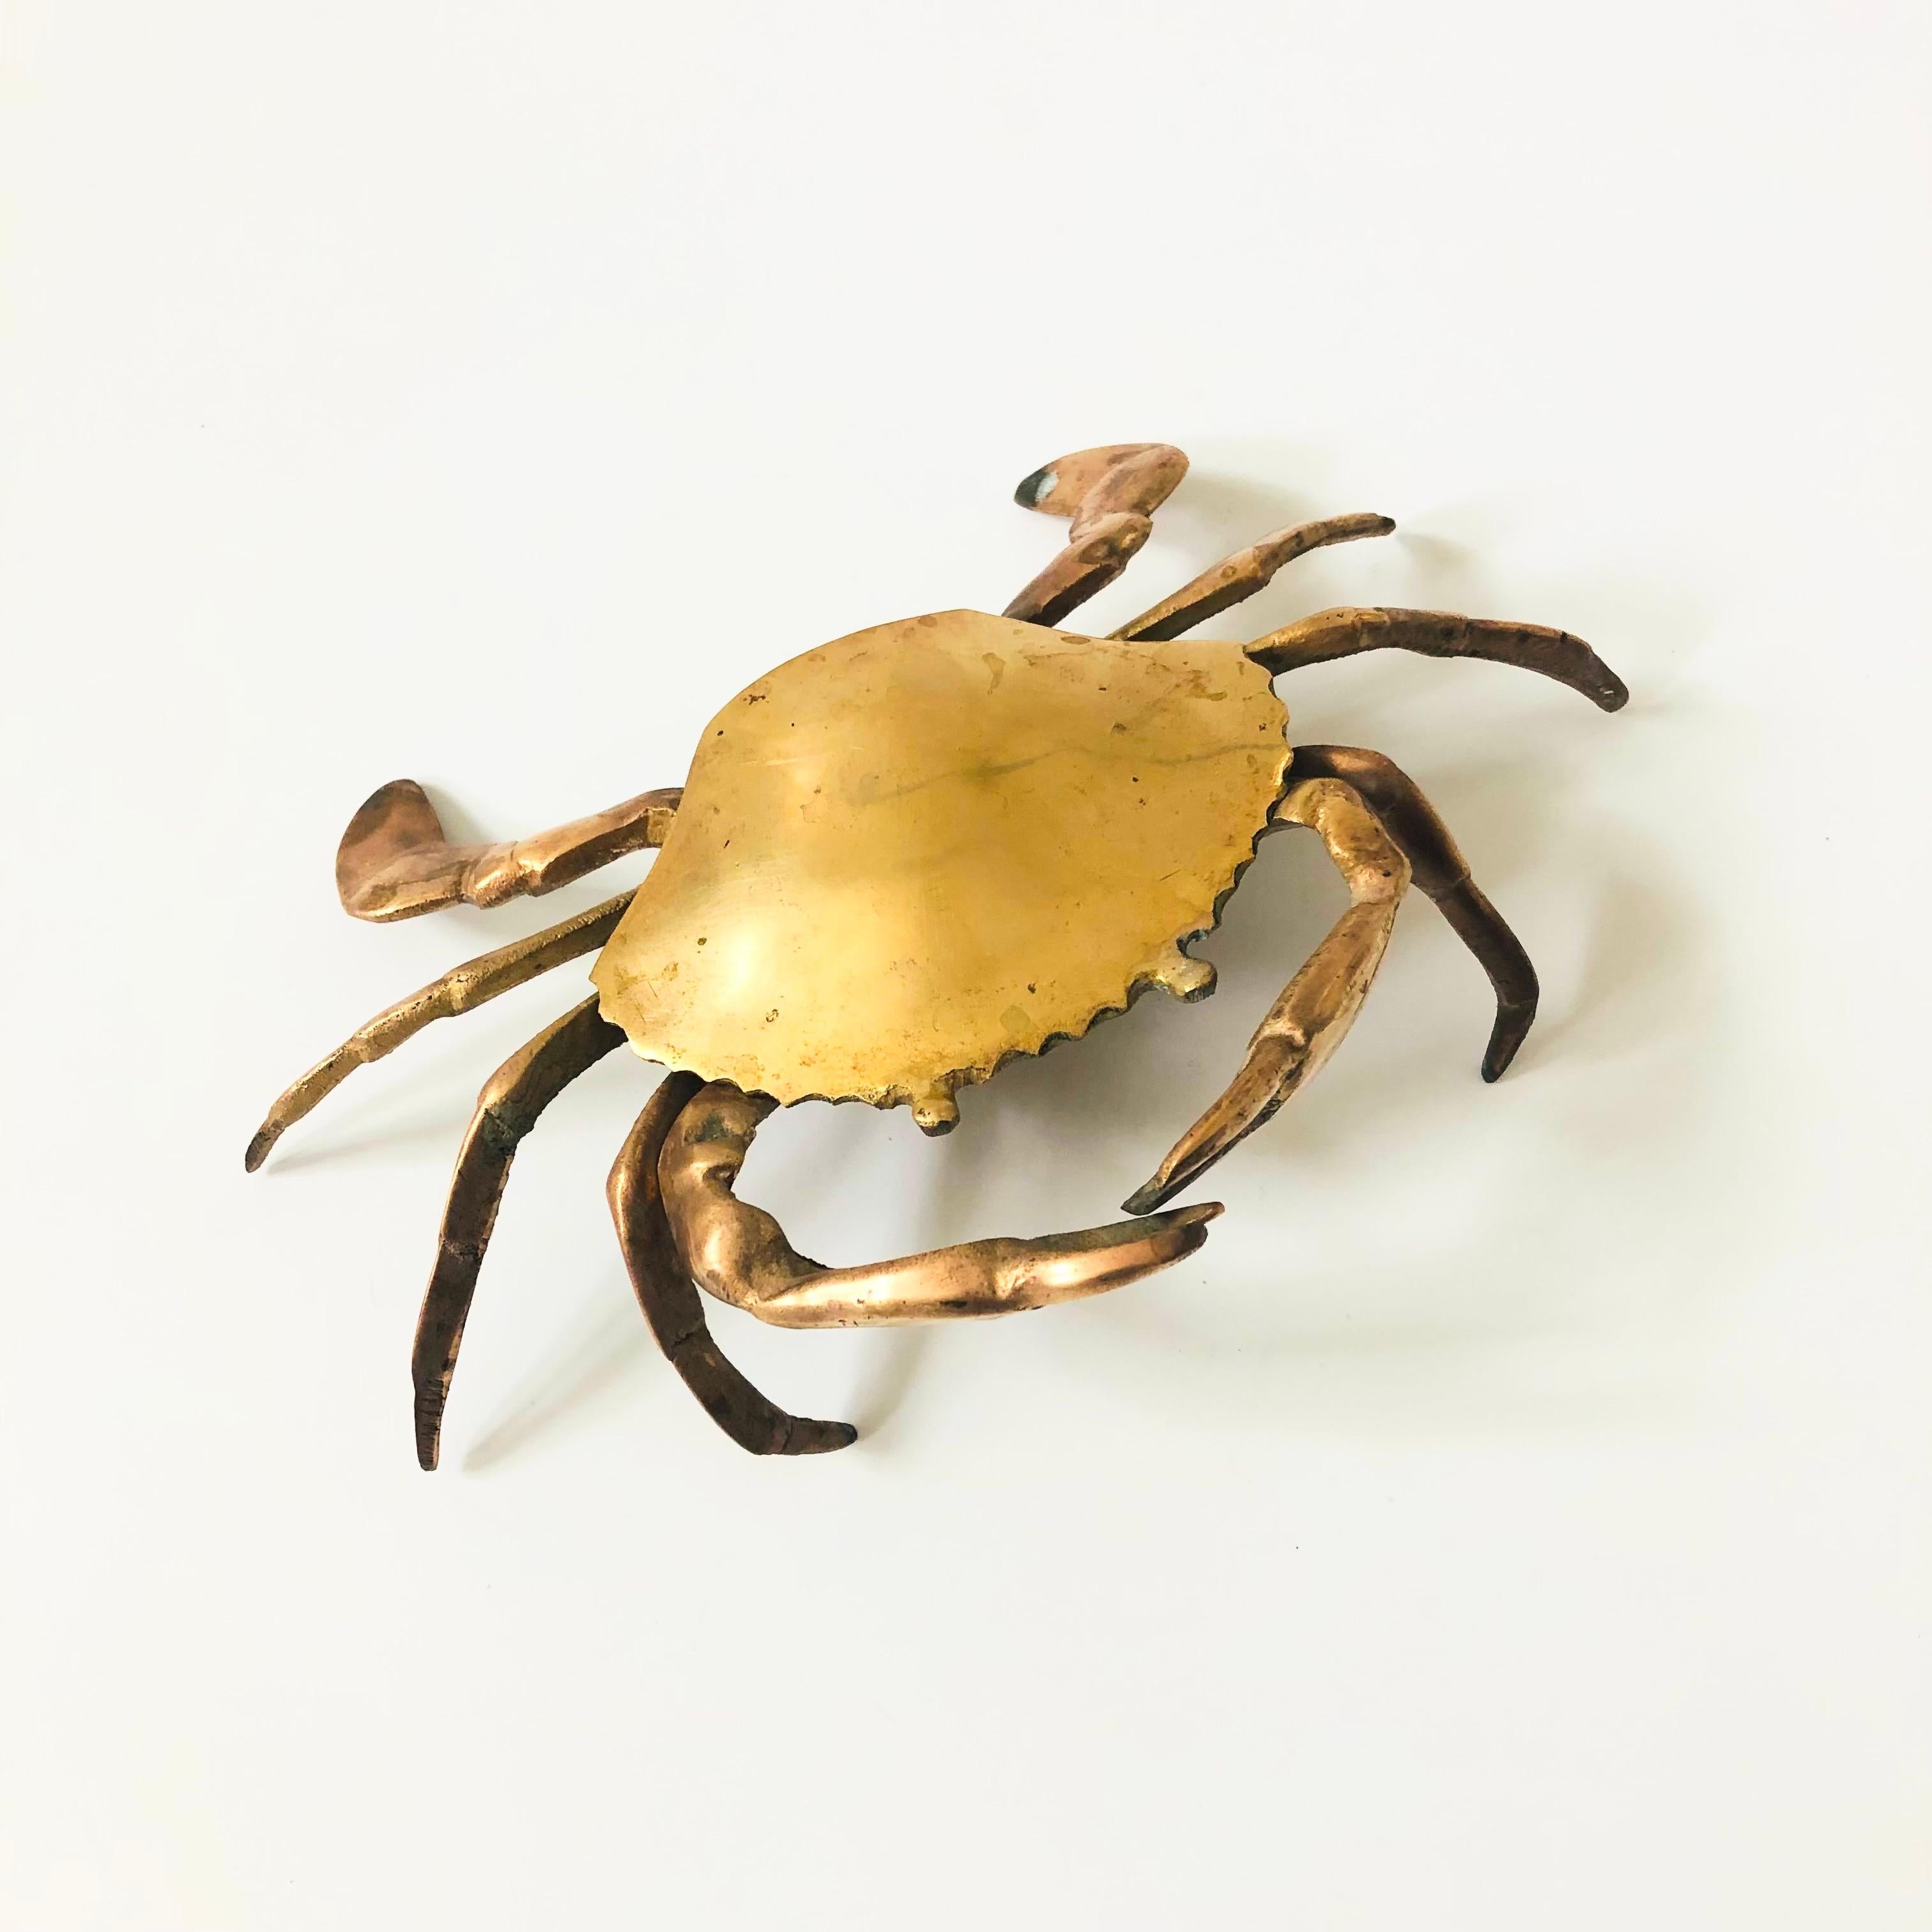 Eine Messingdose in Form einer Krabbe. Der Deckel lässt sich aufklappen und gibt ein kleines Fach in der Mitte frei, in dem kleine Gegenstände aufbewahrt werden können. Schöne Details, die in das Messing eingearbeitet wurden, um die Gesichtszüge der